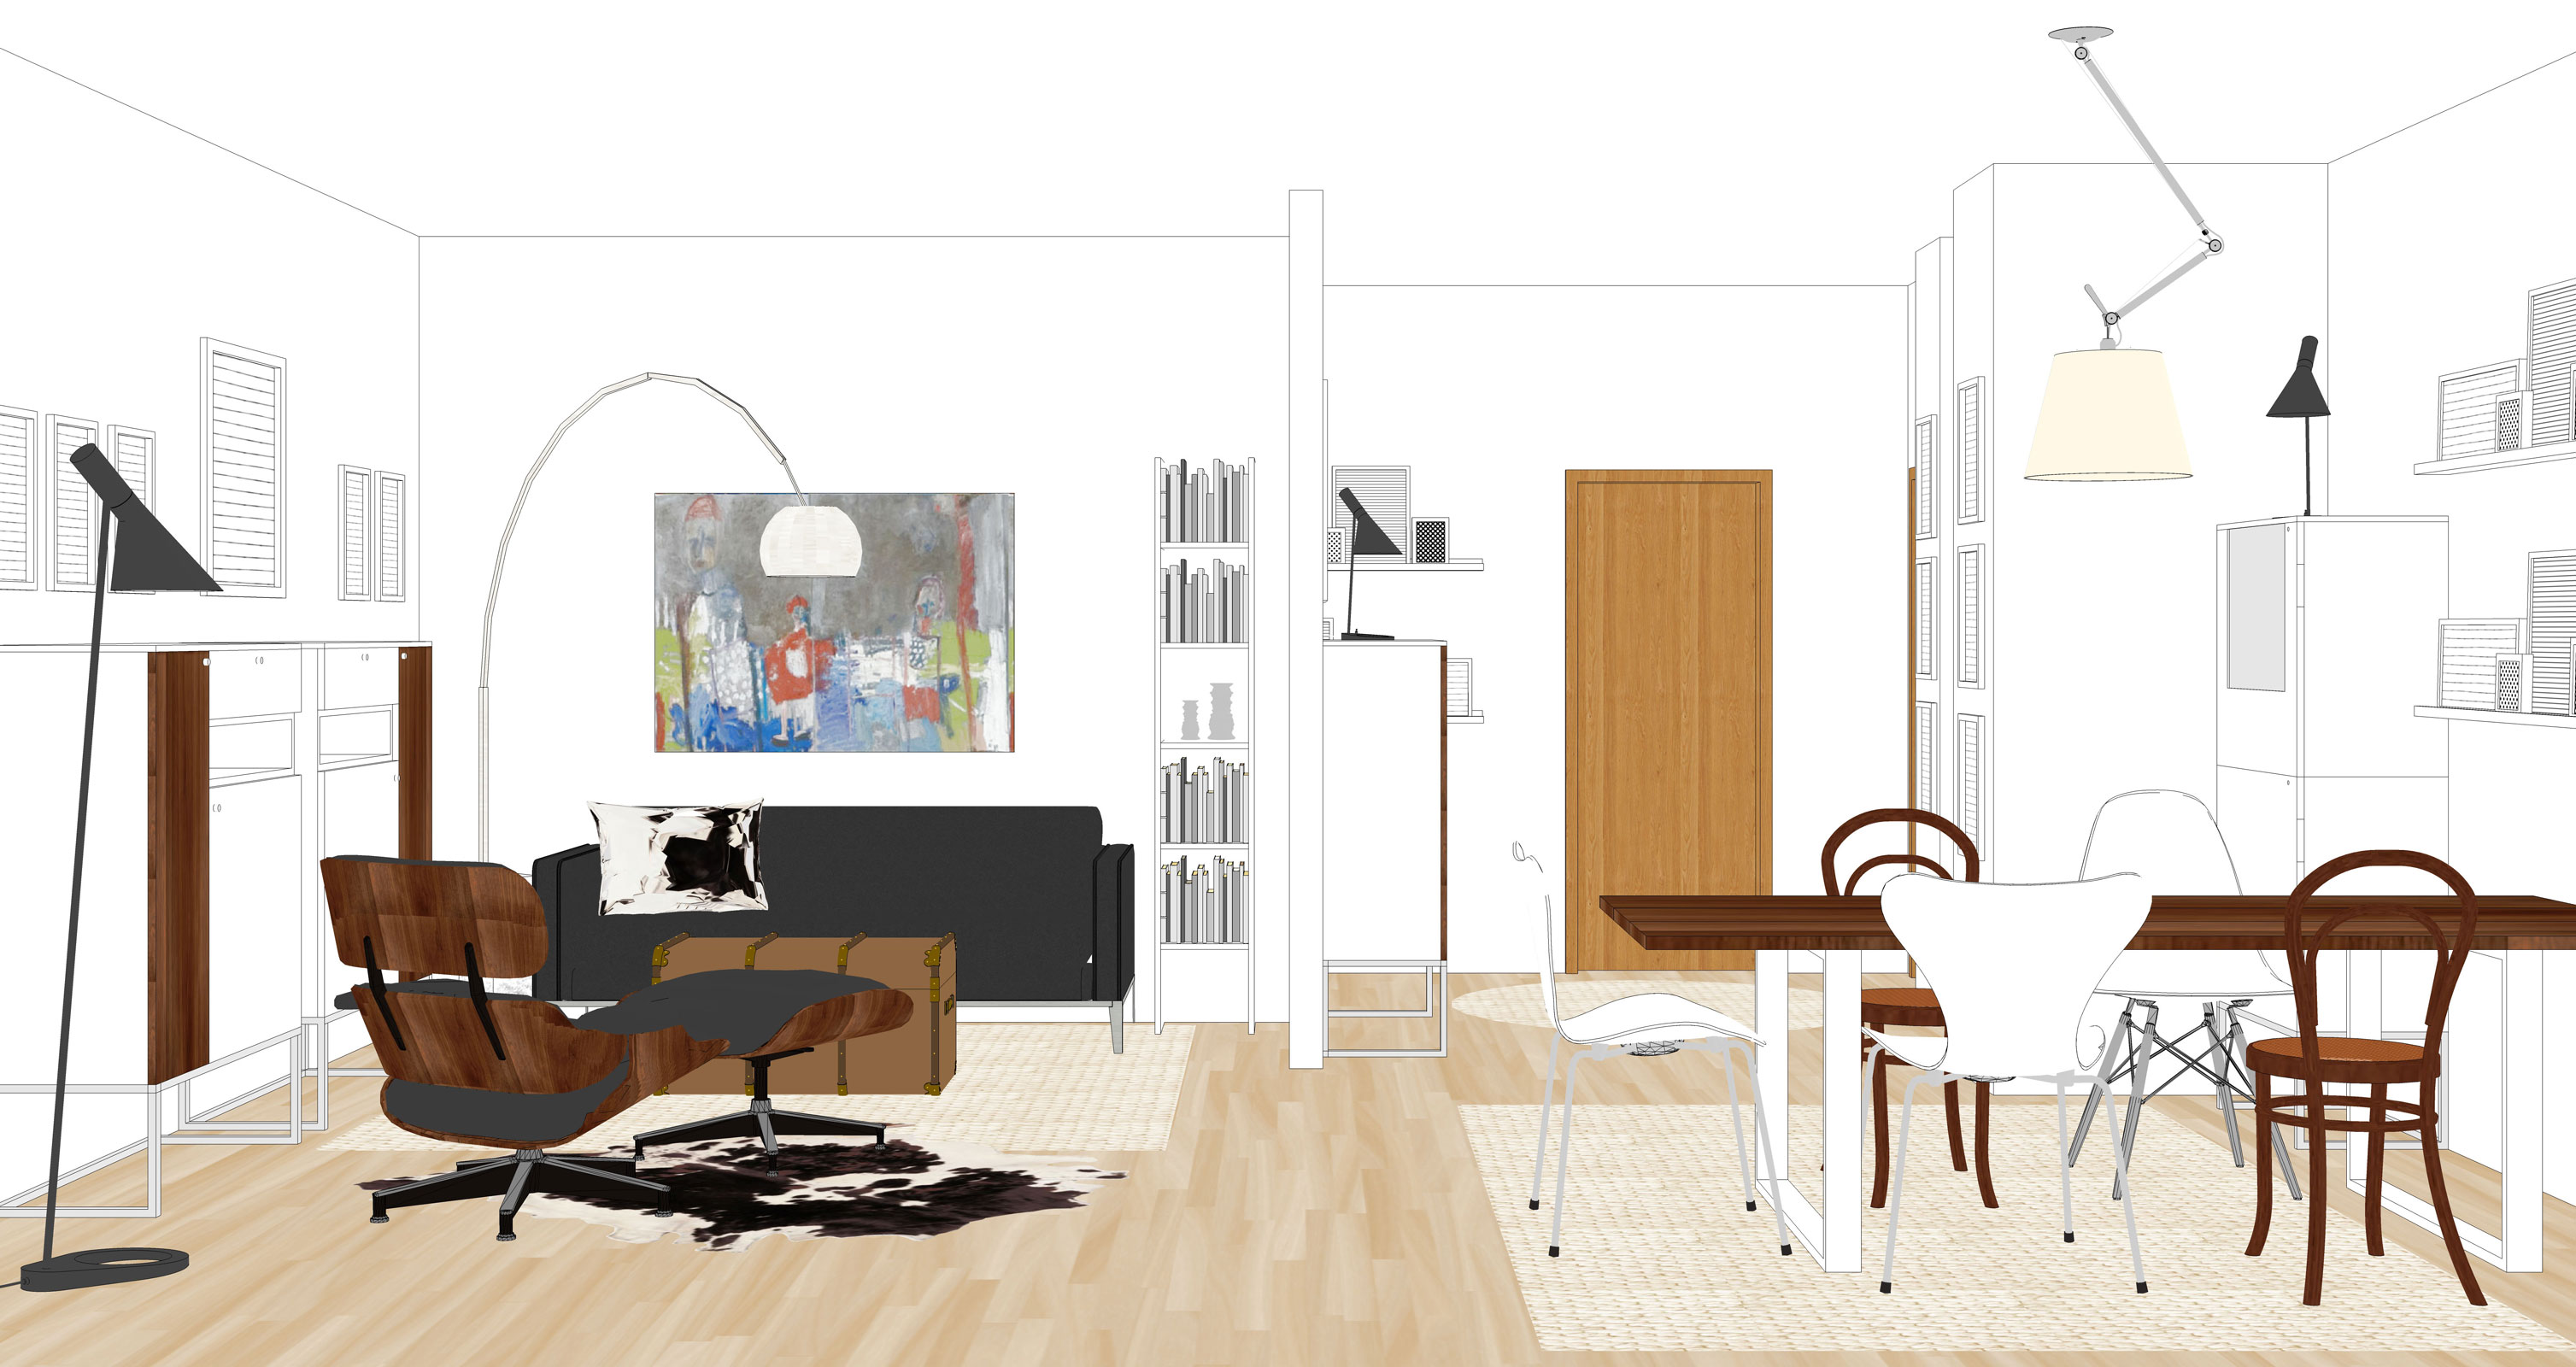 Wohnraum in 3D gezeichnet Online Wohnberatung